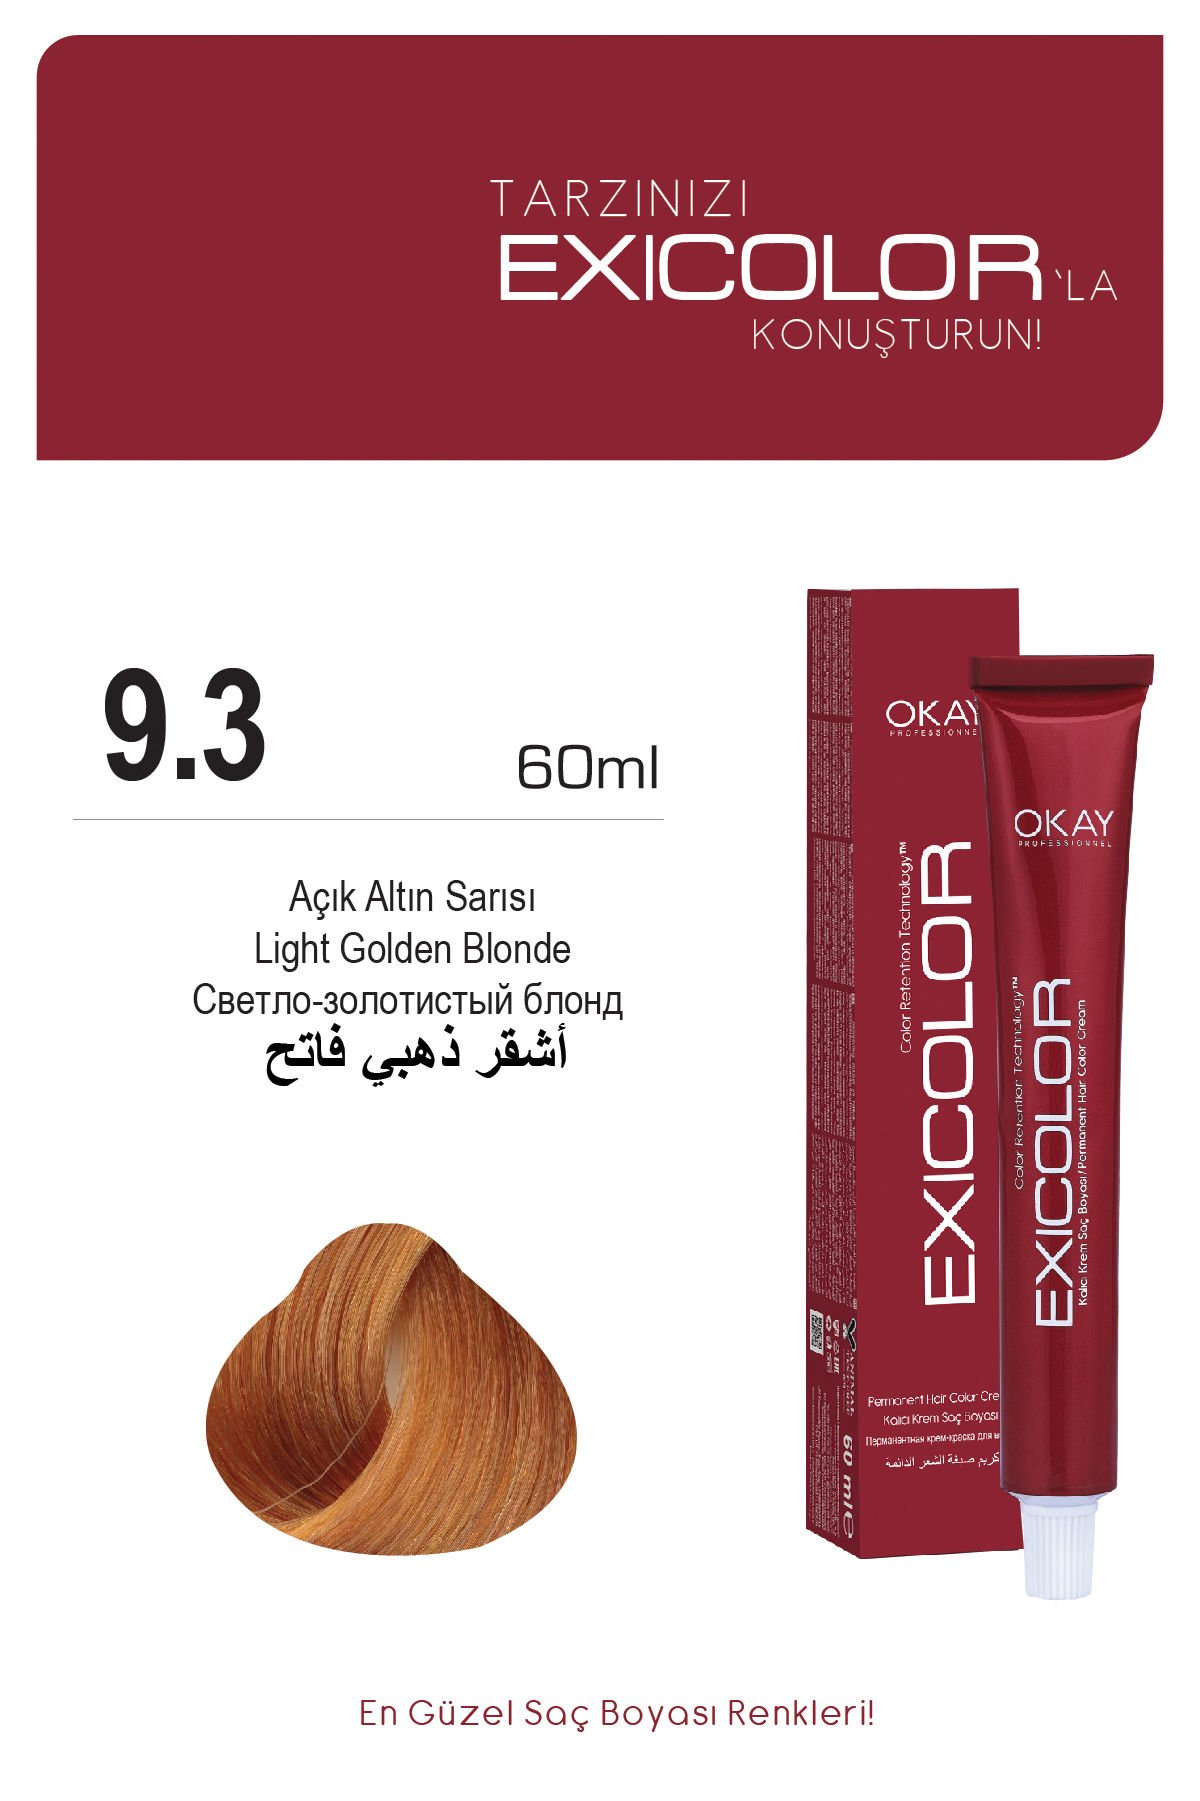 Exicolor 9.3 Açık Altın Sarısı - Kalıcı Krem Saç Boyası 60 ml Tüp